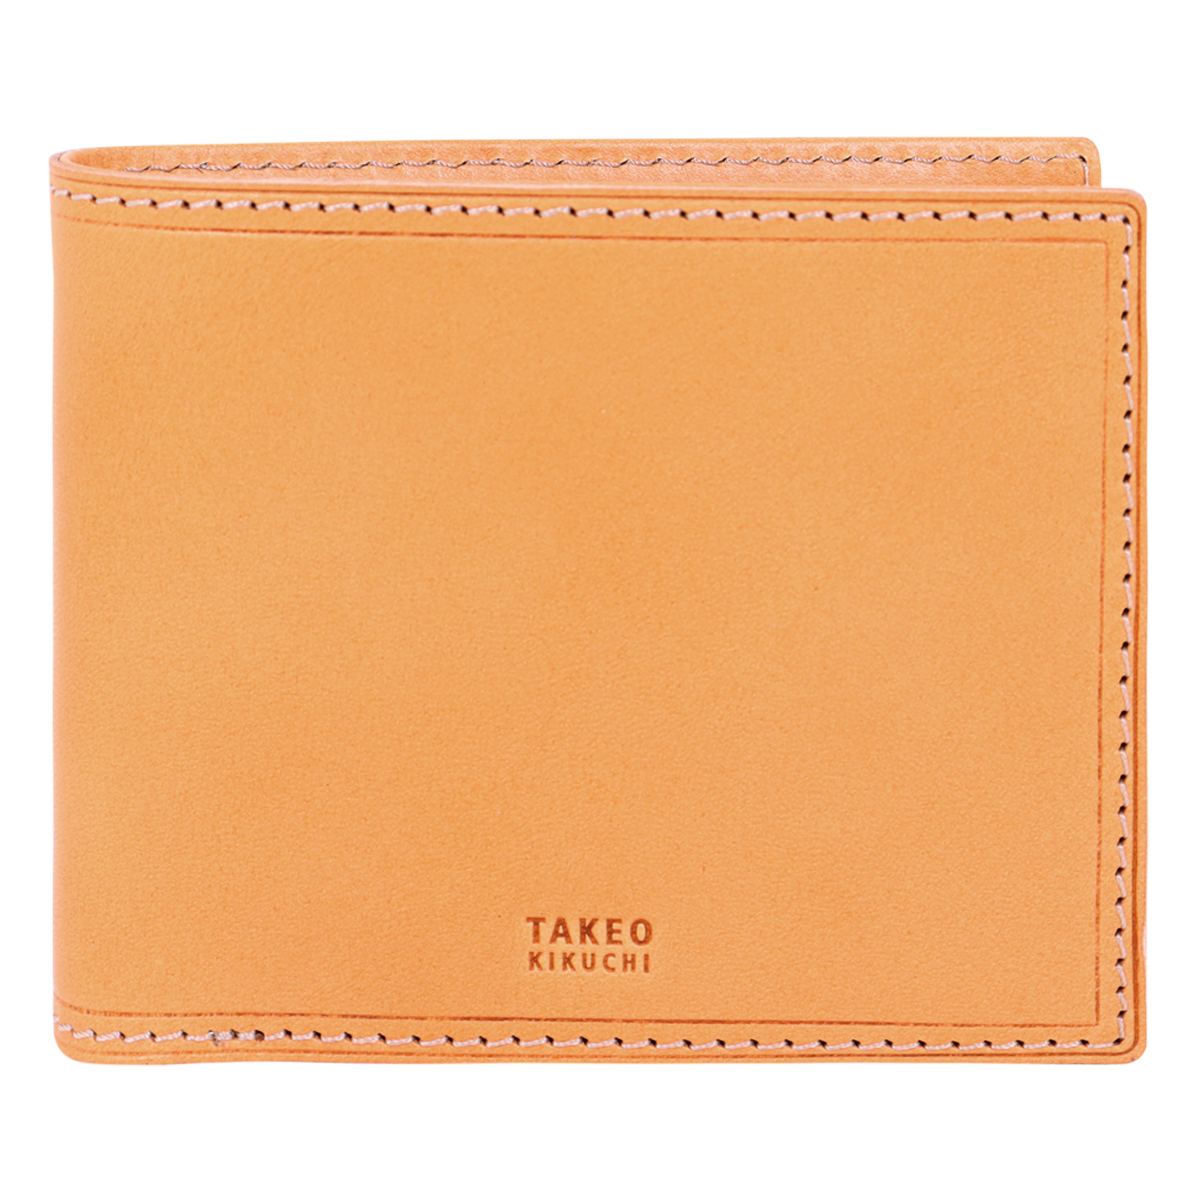 タケオキクチ 二つ折り財布 Surface サーフェス小物 メンズ 786604 TAKEO KIK...